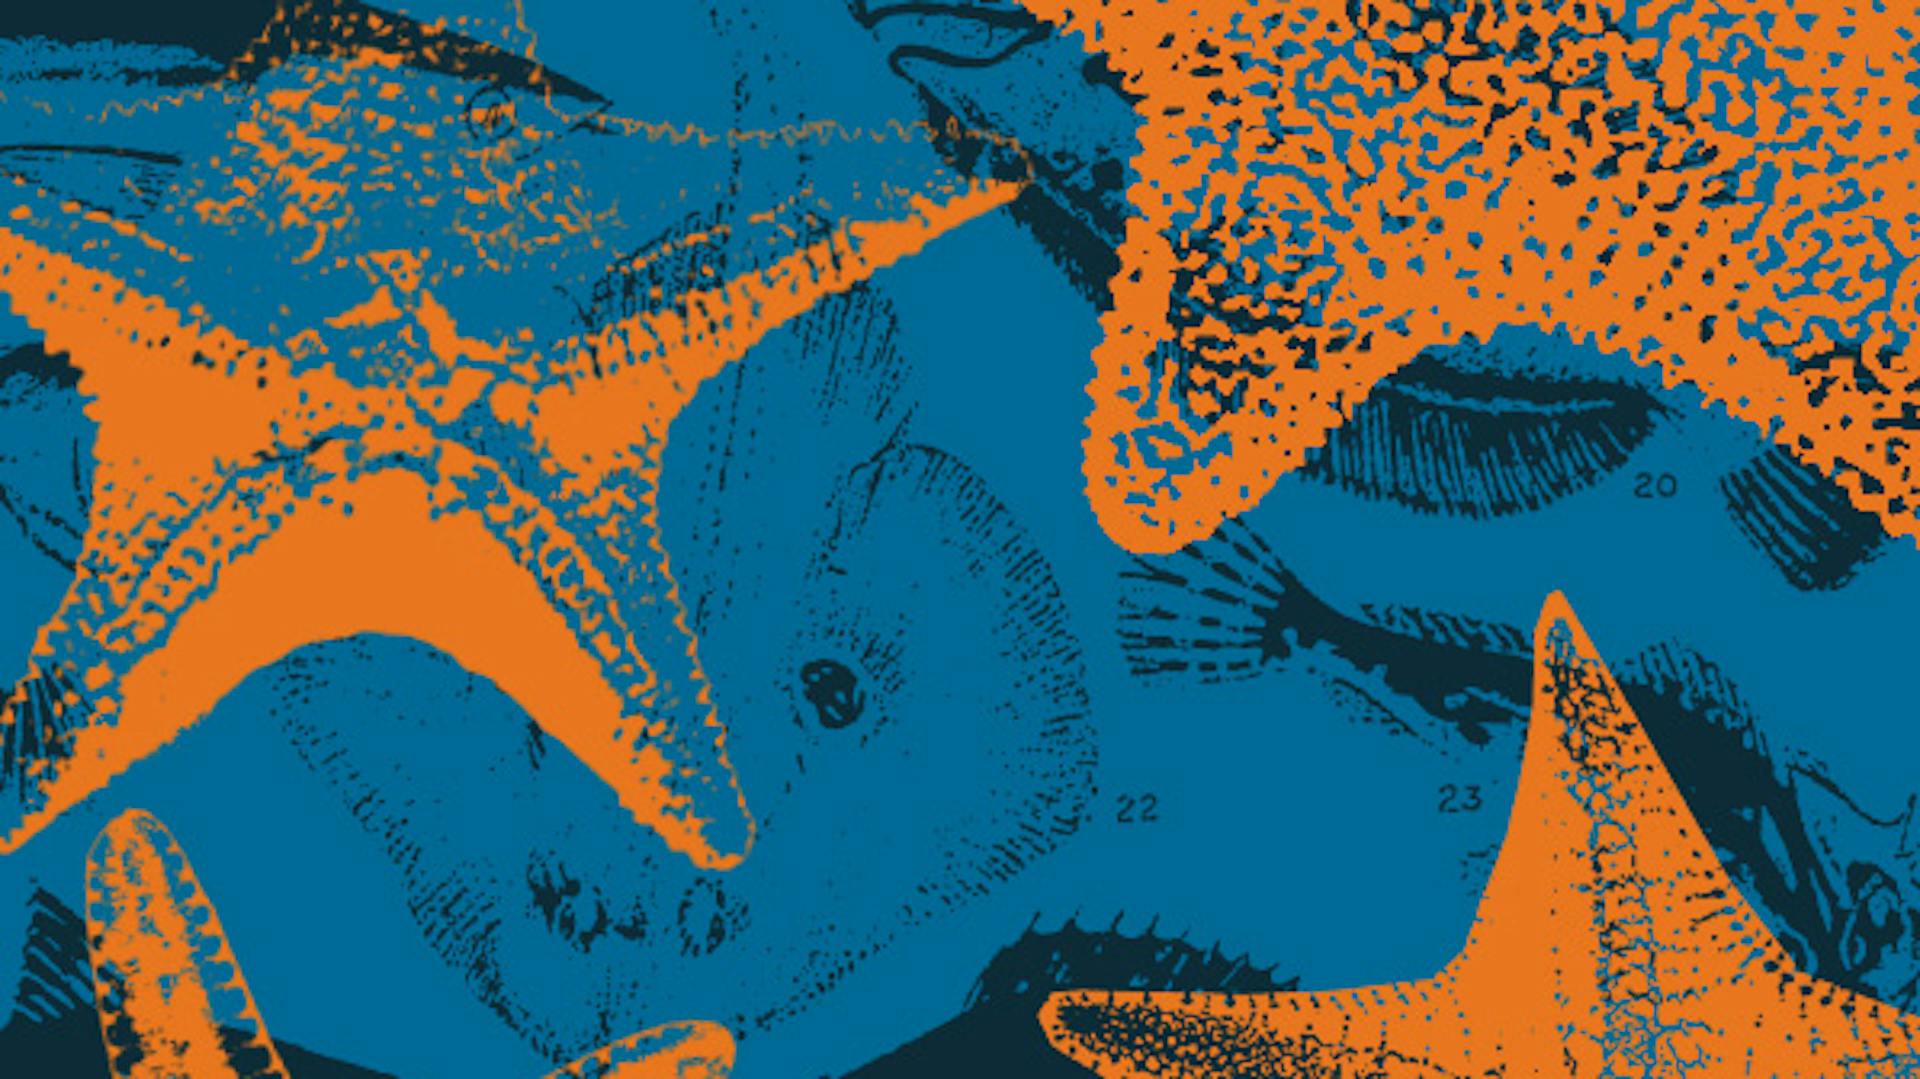 Ilustrações em um fundo azul, há imagens de peixes em preto e imagens de estrelas do mar em laranja.